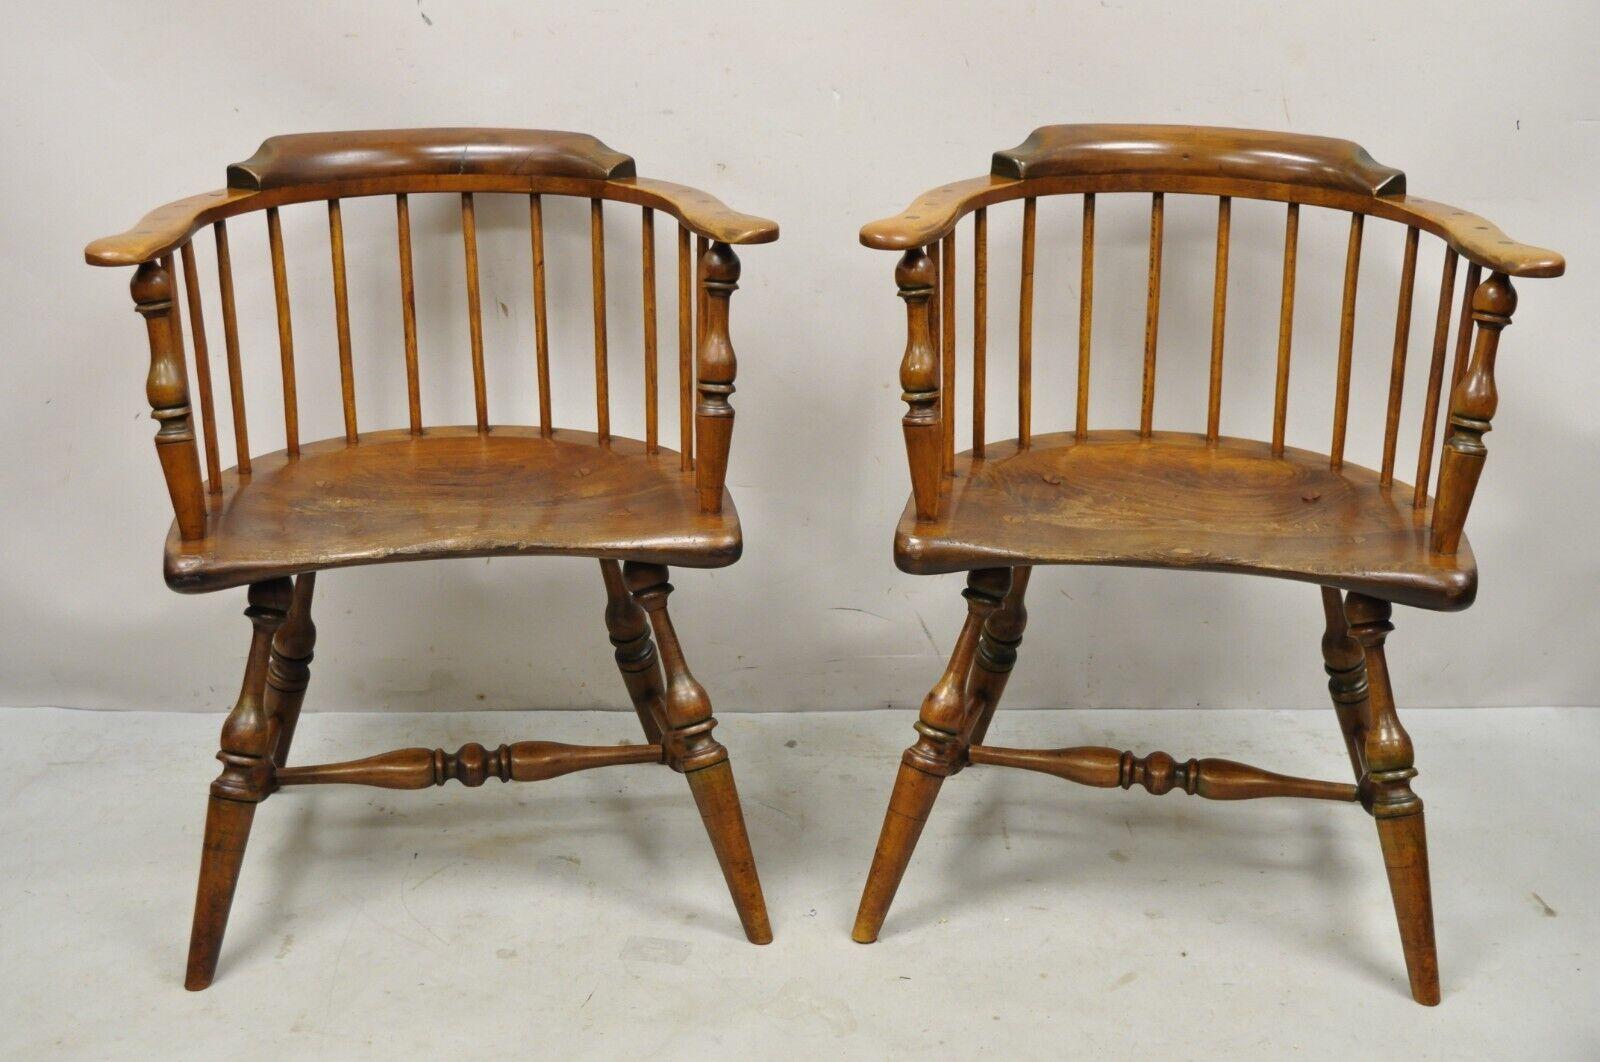 Anciennes chaises à accoudoirs de style Coloni en pin - une paire. L'article se caractérise par une assise en planche serpentine sculptée, des joints apparents, des cadres en bois massif, un magnifique grain de bois, une finition vieillie, une très